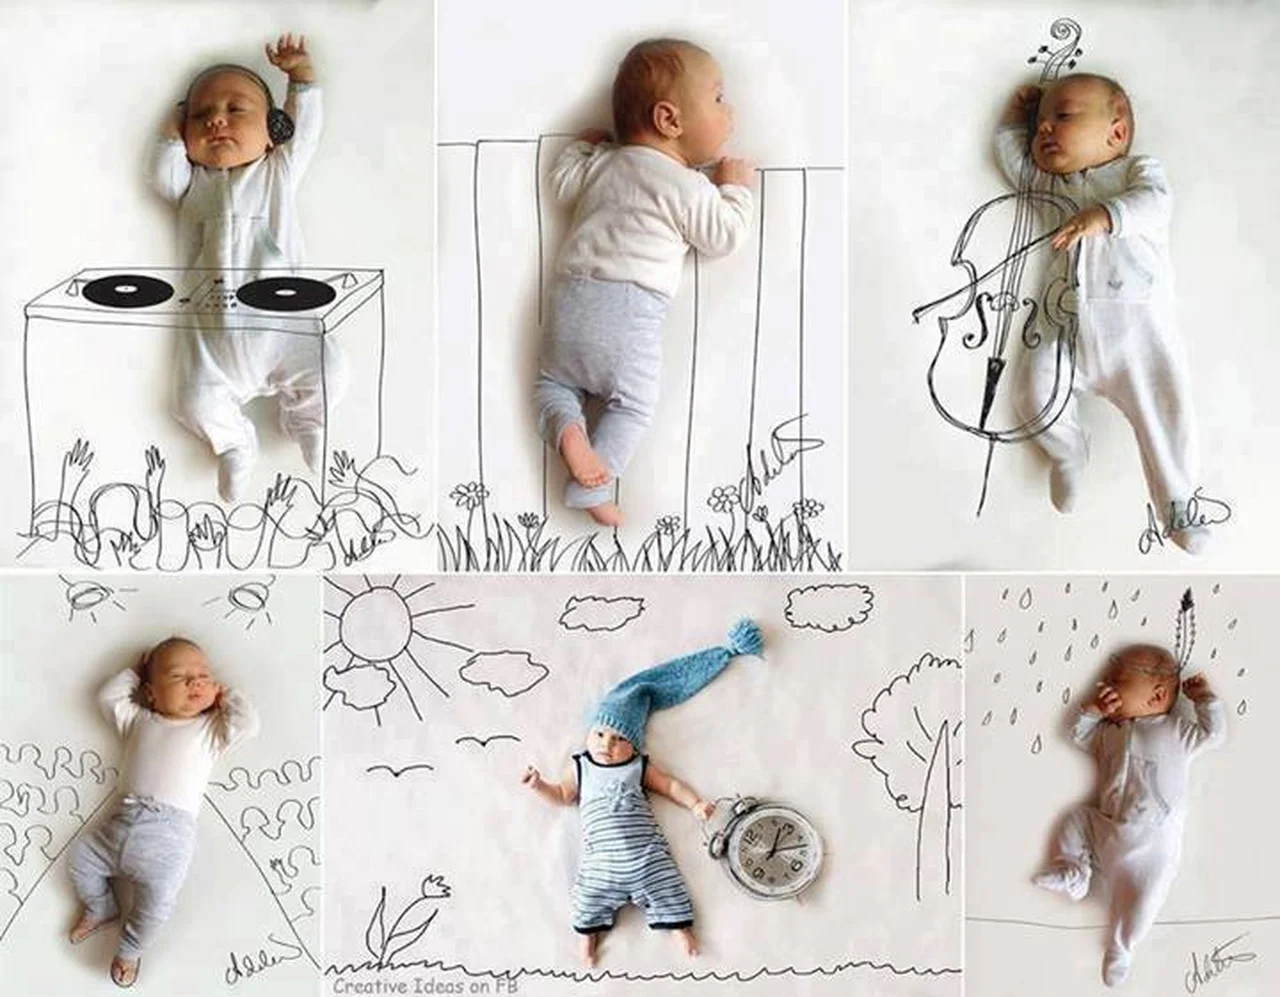 Pomysł na super zdjęcia maluchów :)